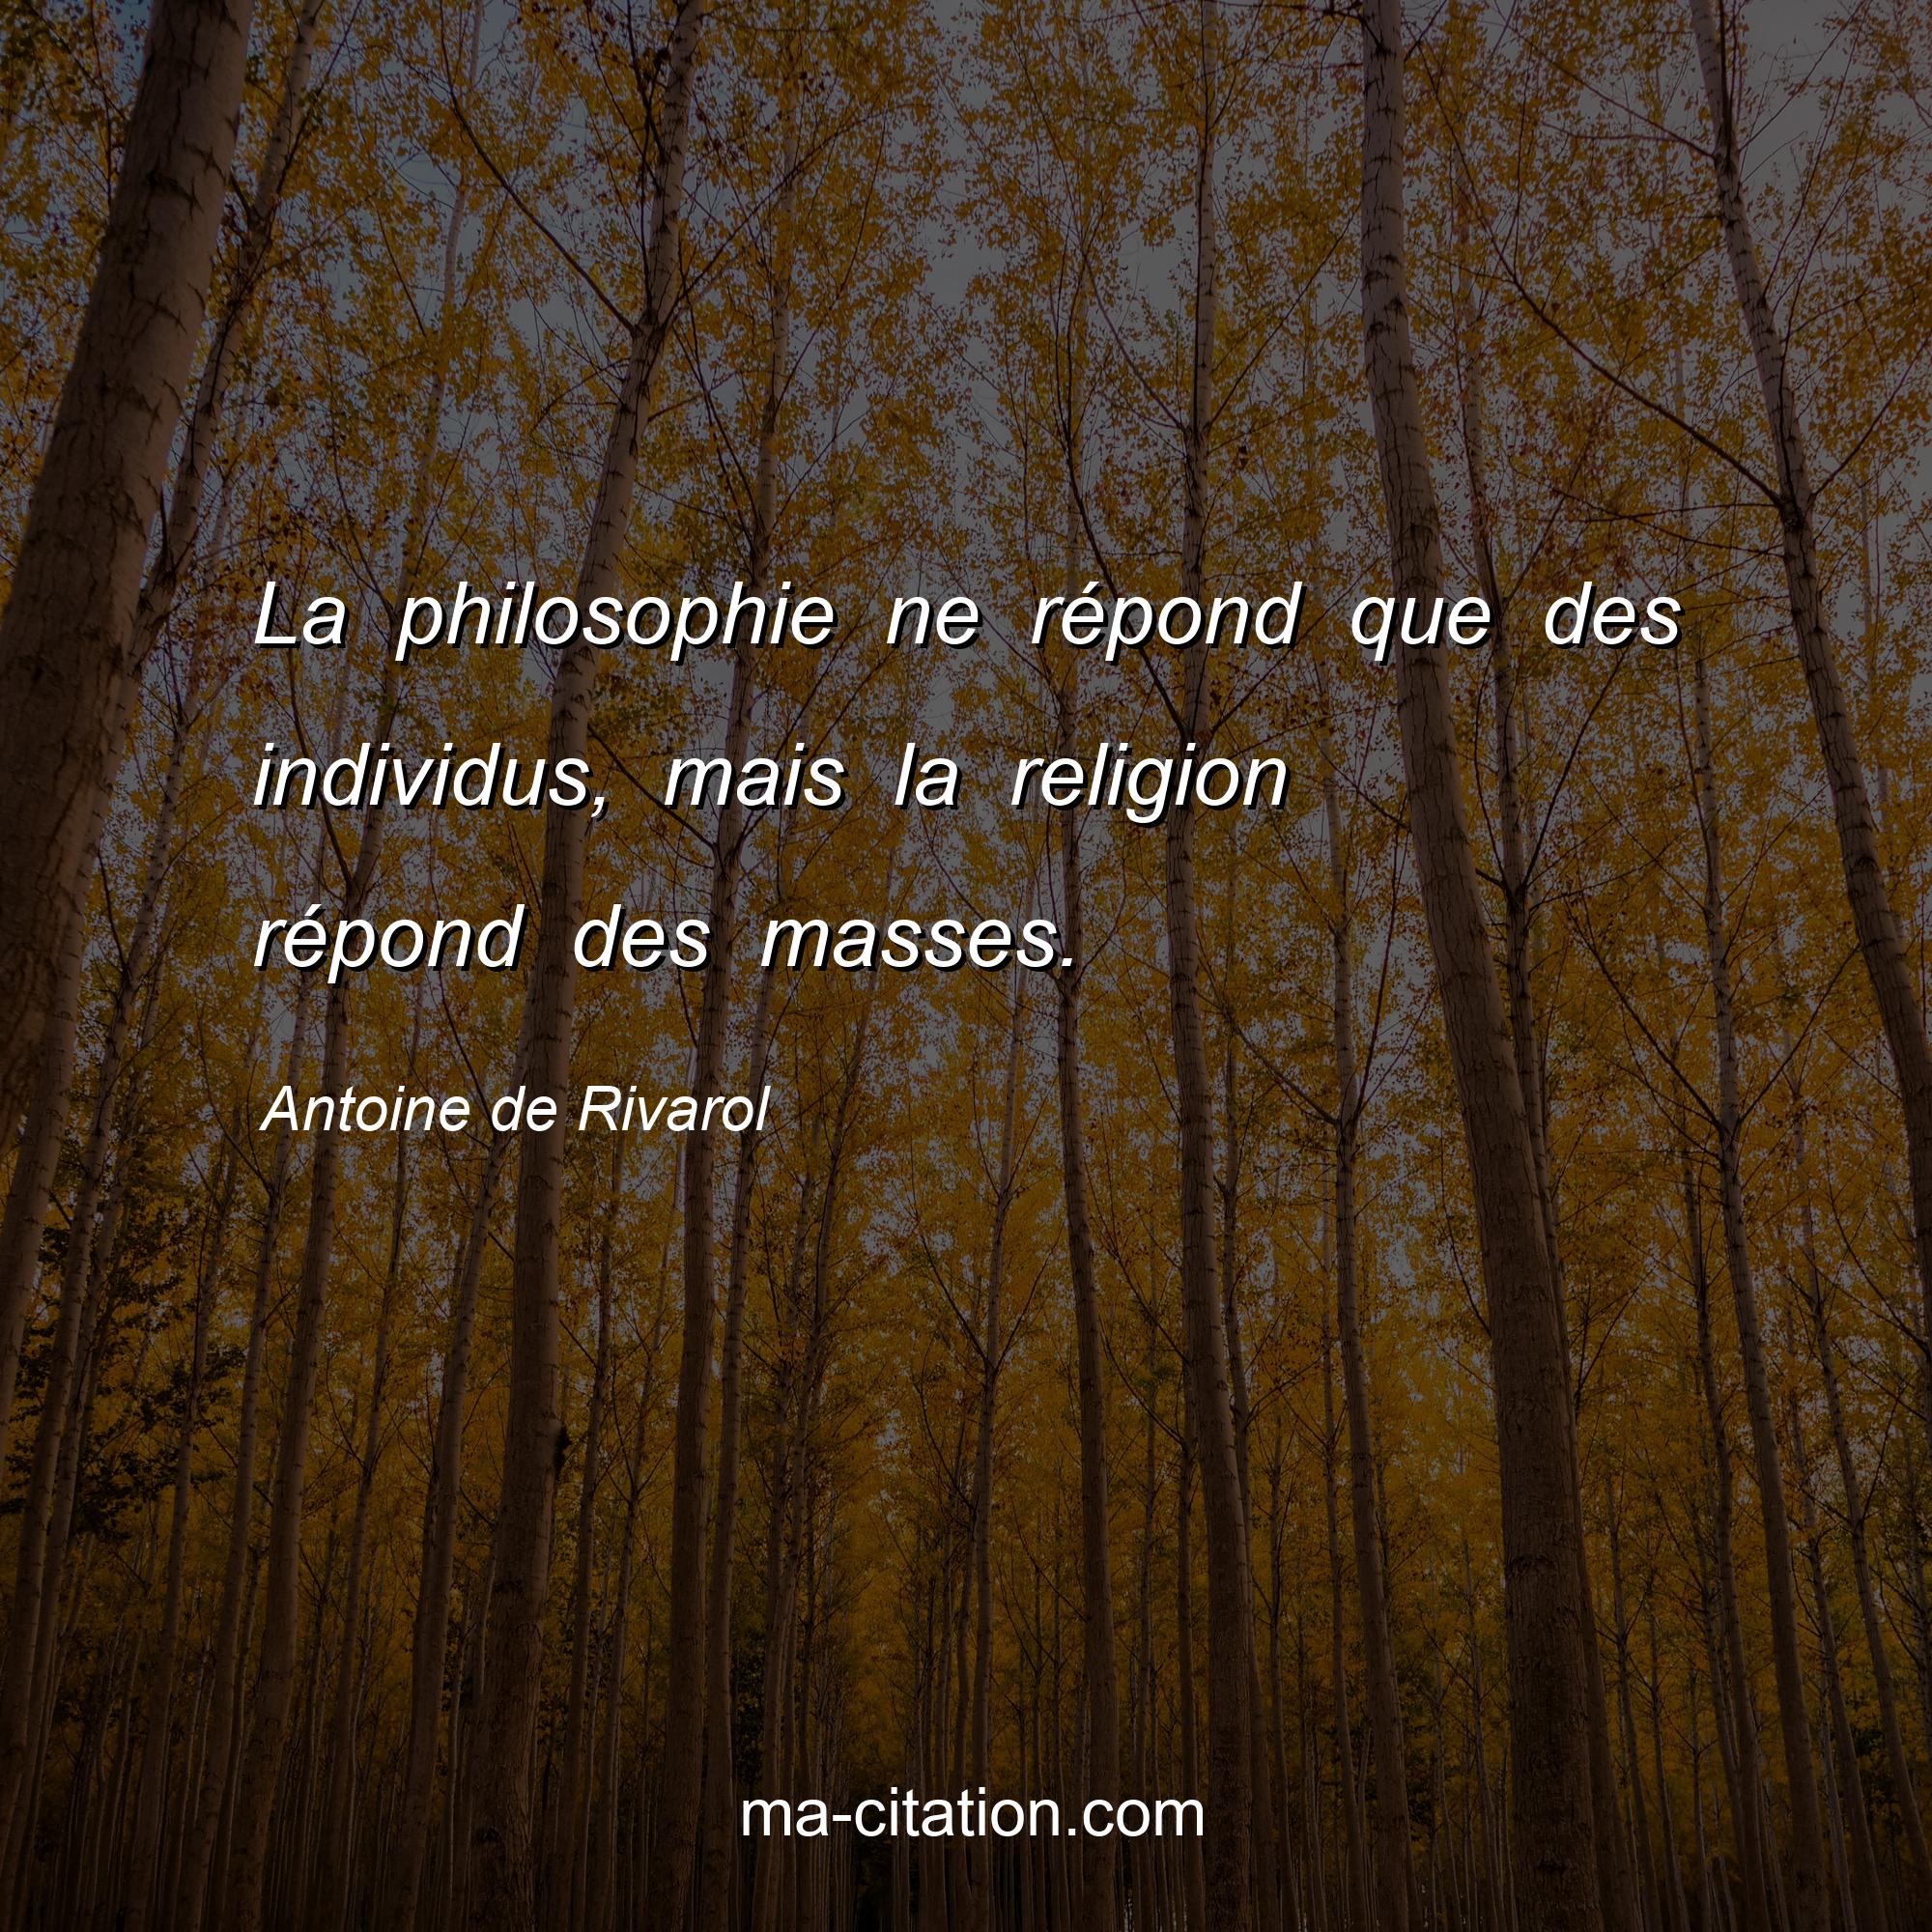 Antoine de Rivarol : La philosophie ne répond que des individus, mais la religion répond des masses.